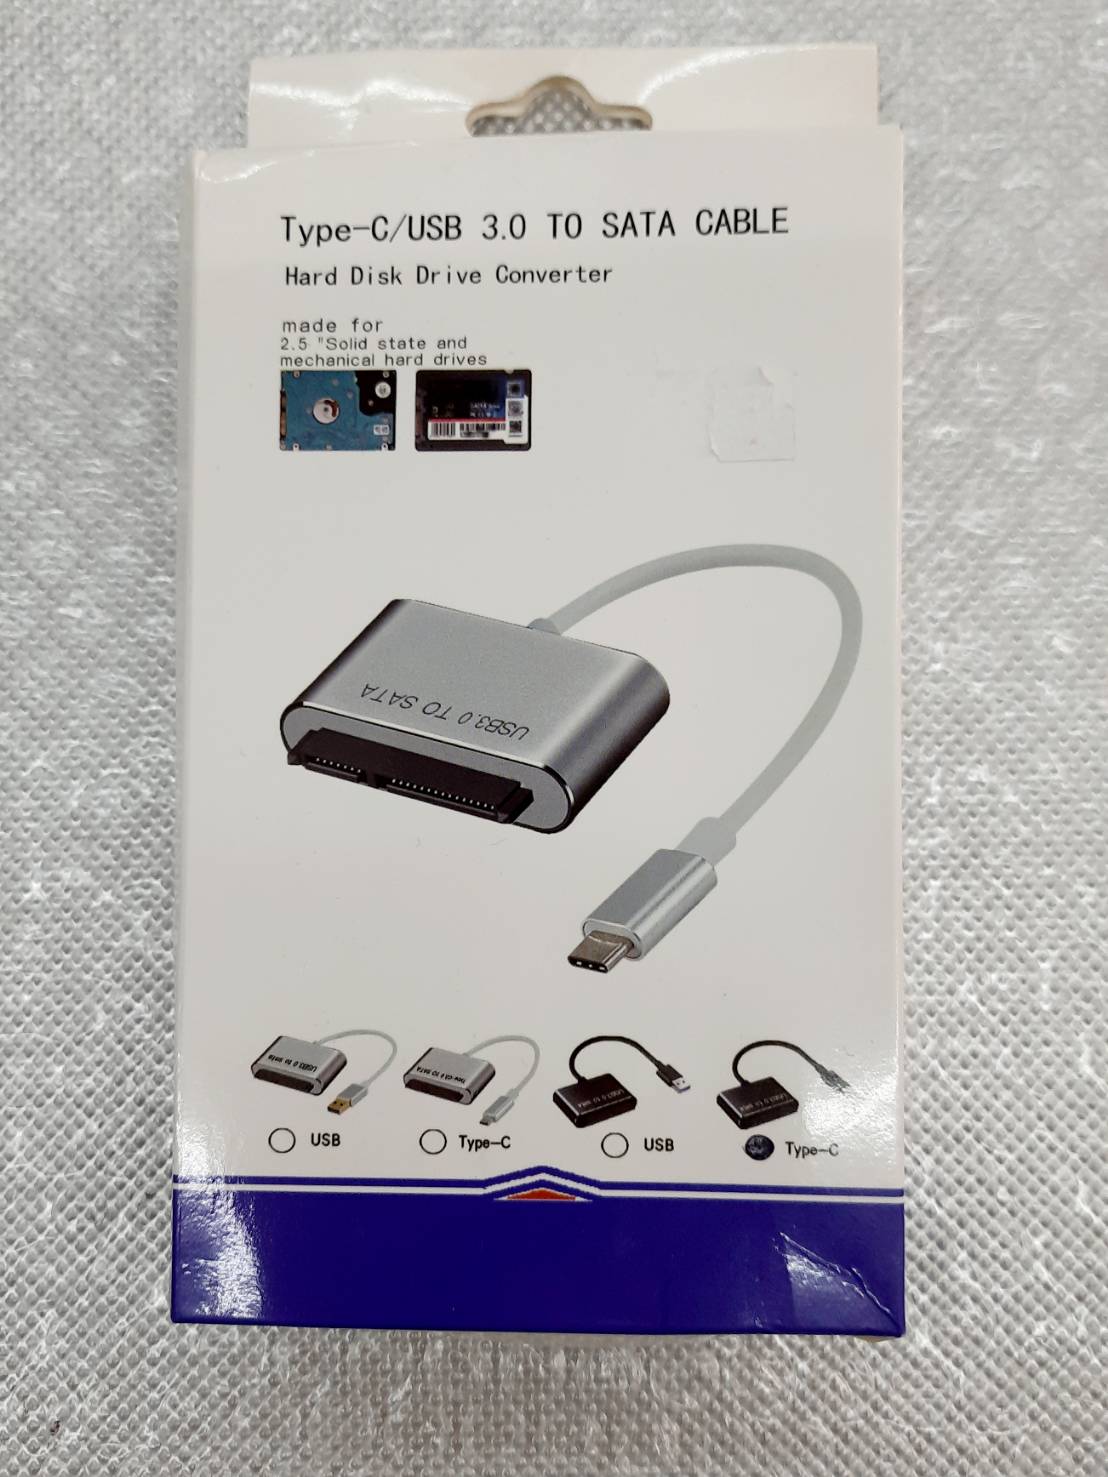 Type C /USB 3.0 To SATA CABLE อุปกรณ์เชื่อมต่อสาย Ty c กับฮาร์ดดิส SATA  เป็นสาย 3.0 คุณภาพดี รองรับทุกรุ่น รูปทรงสวยงาม แข็งแรงทนทาน รองรับฮาร์ดดิสขนาด 2.5